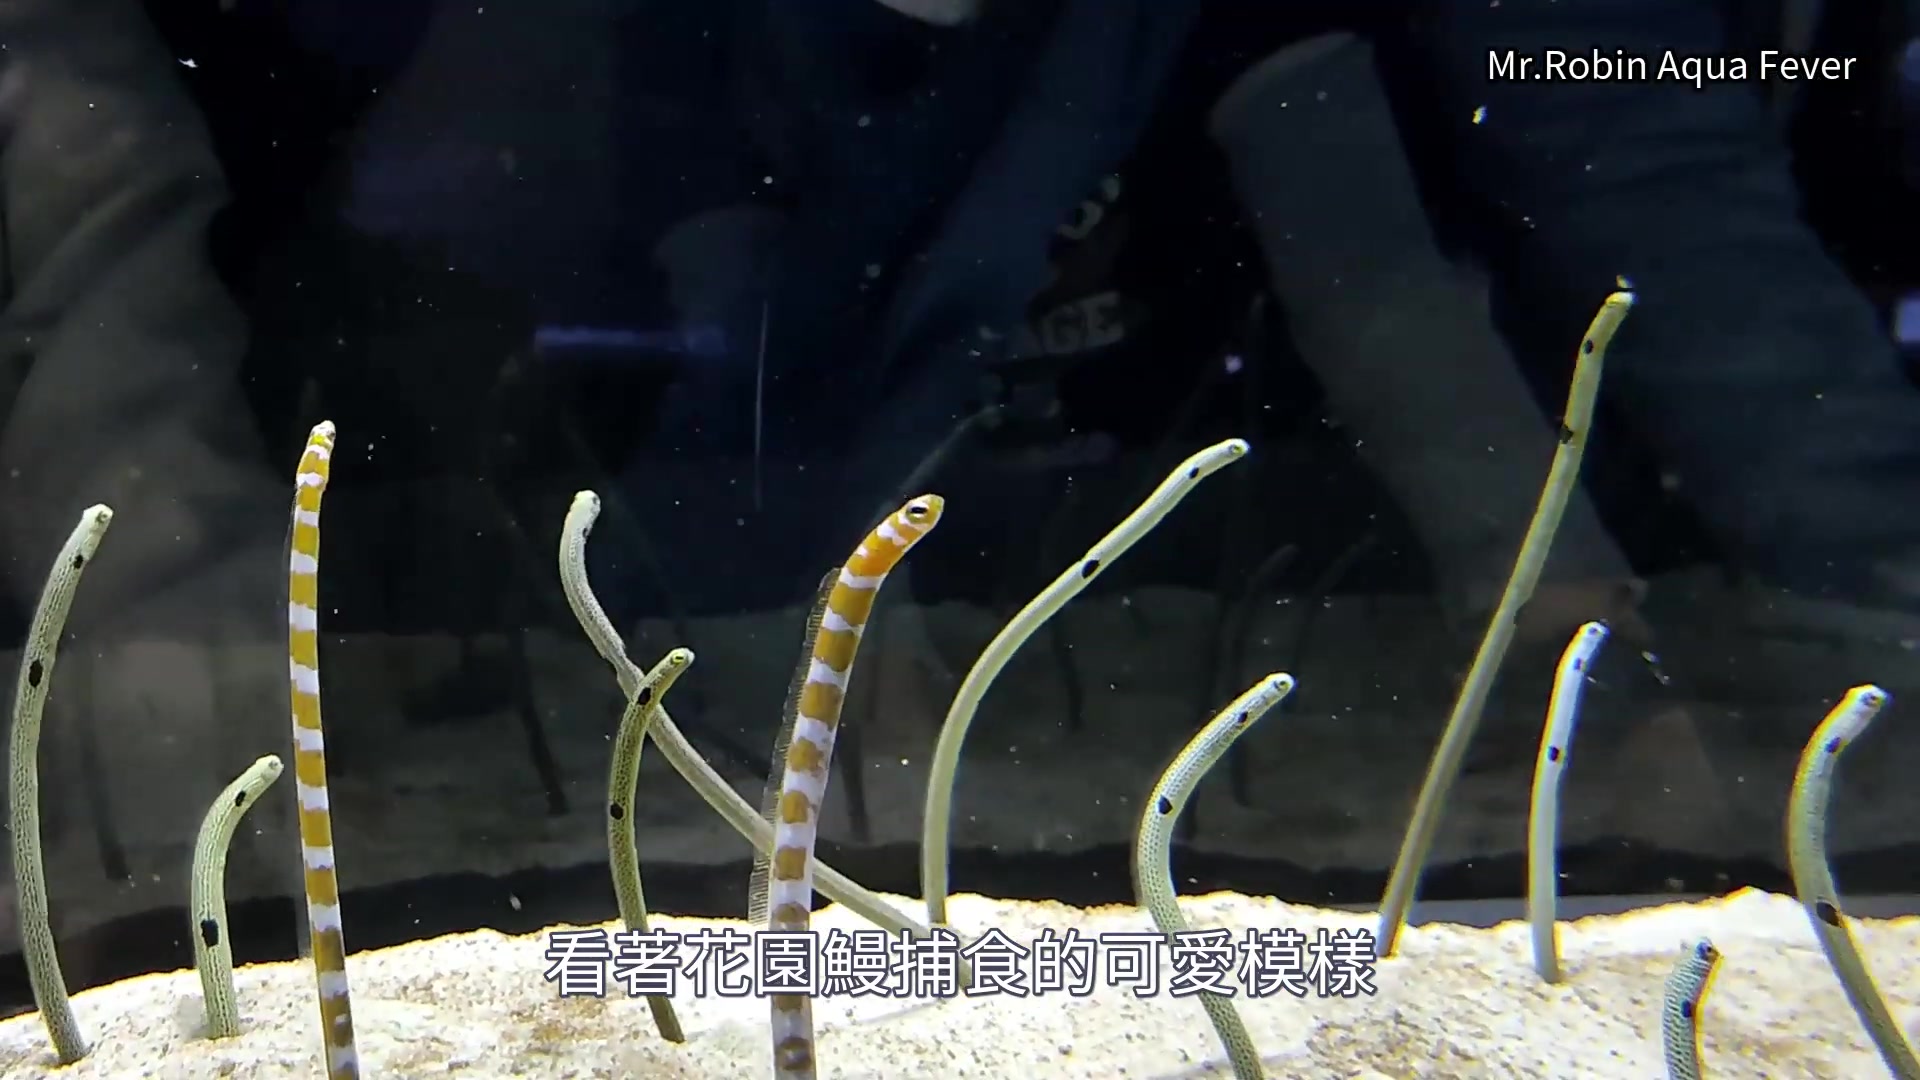 日本东京墨田水族馆 花园鳗喂食秀